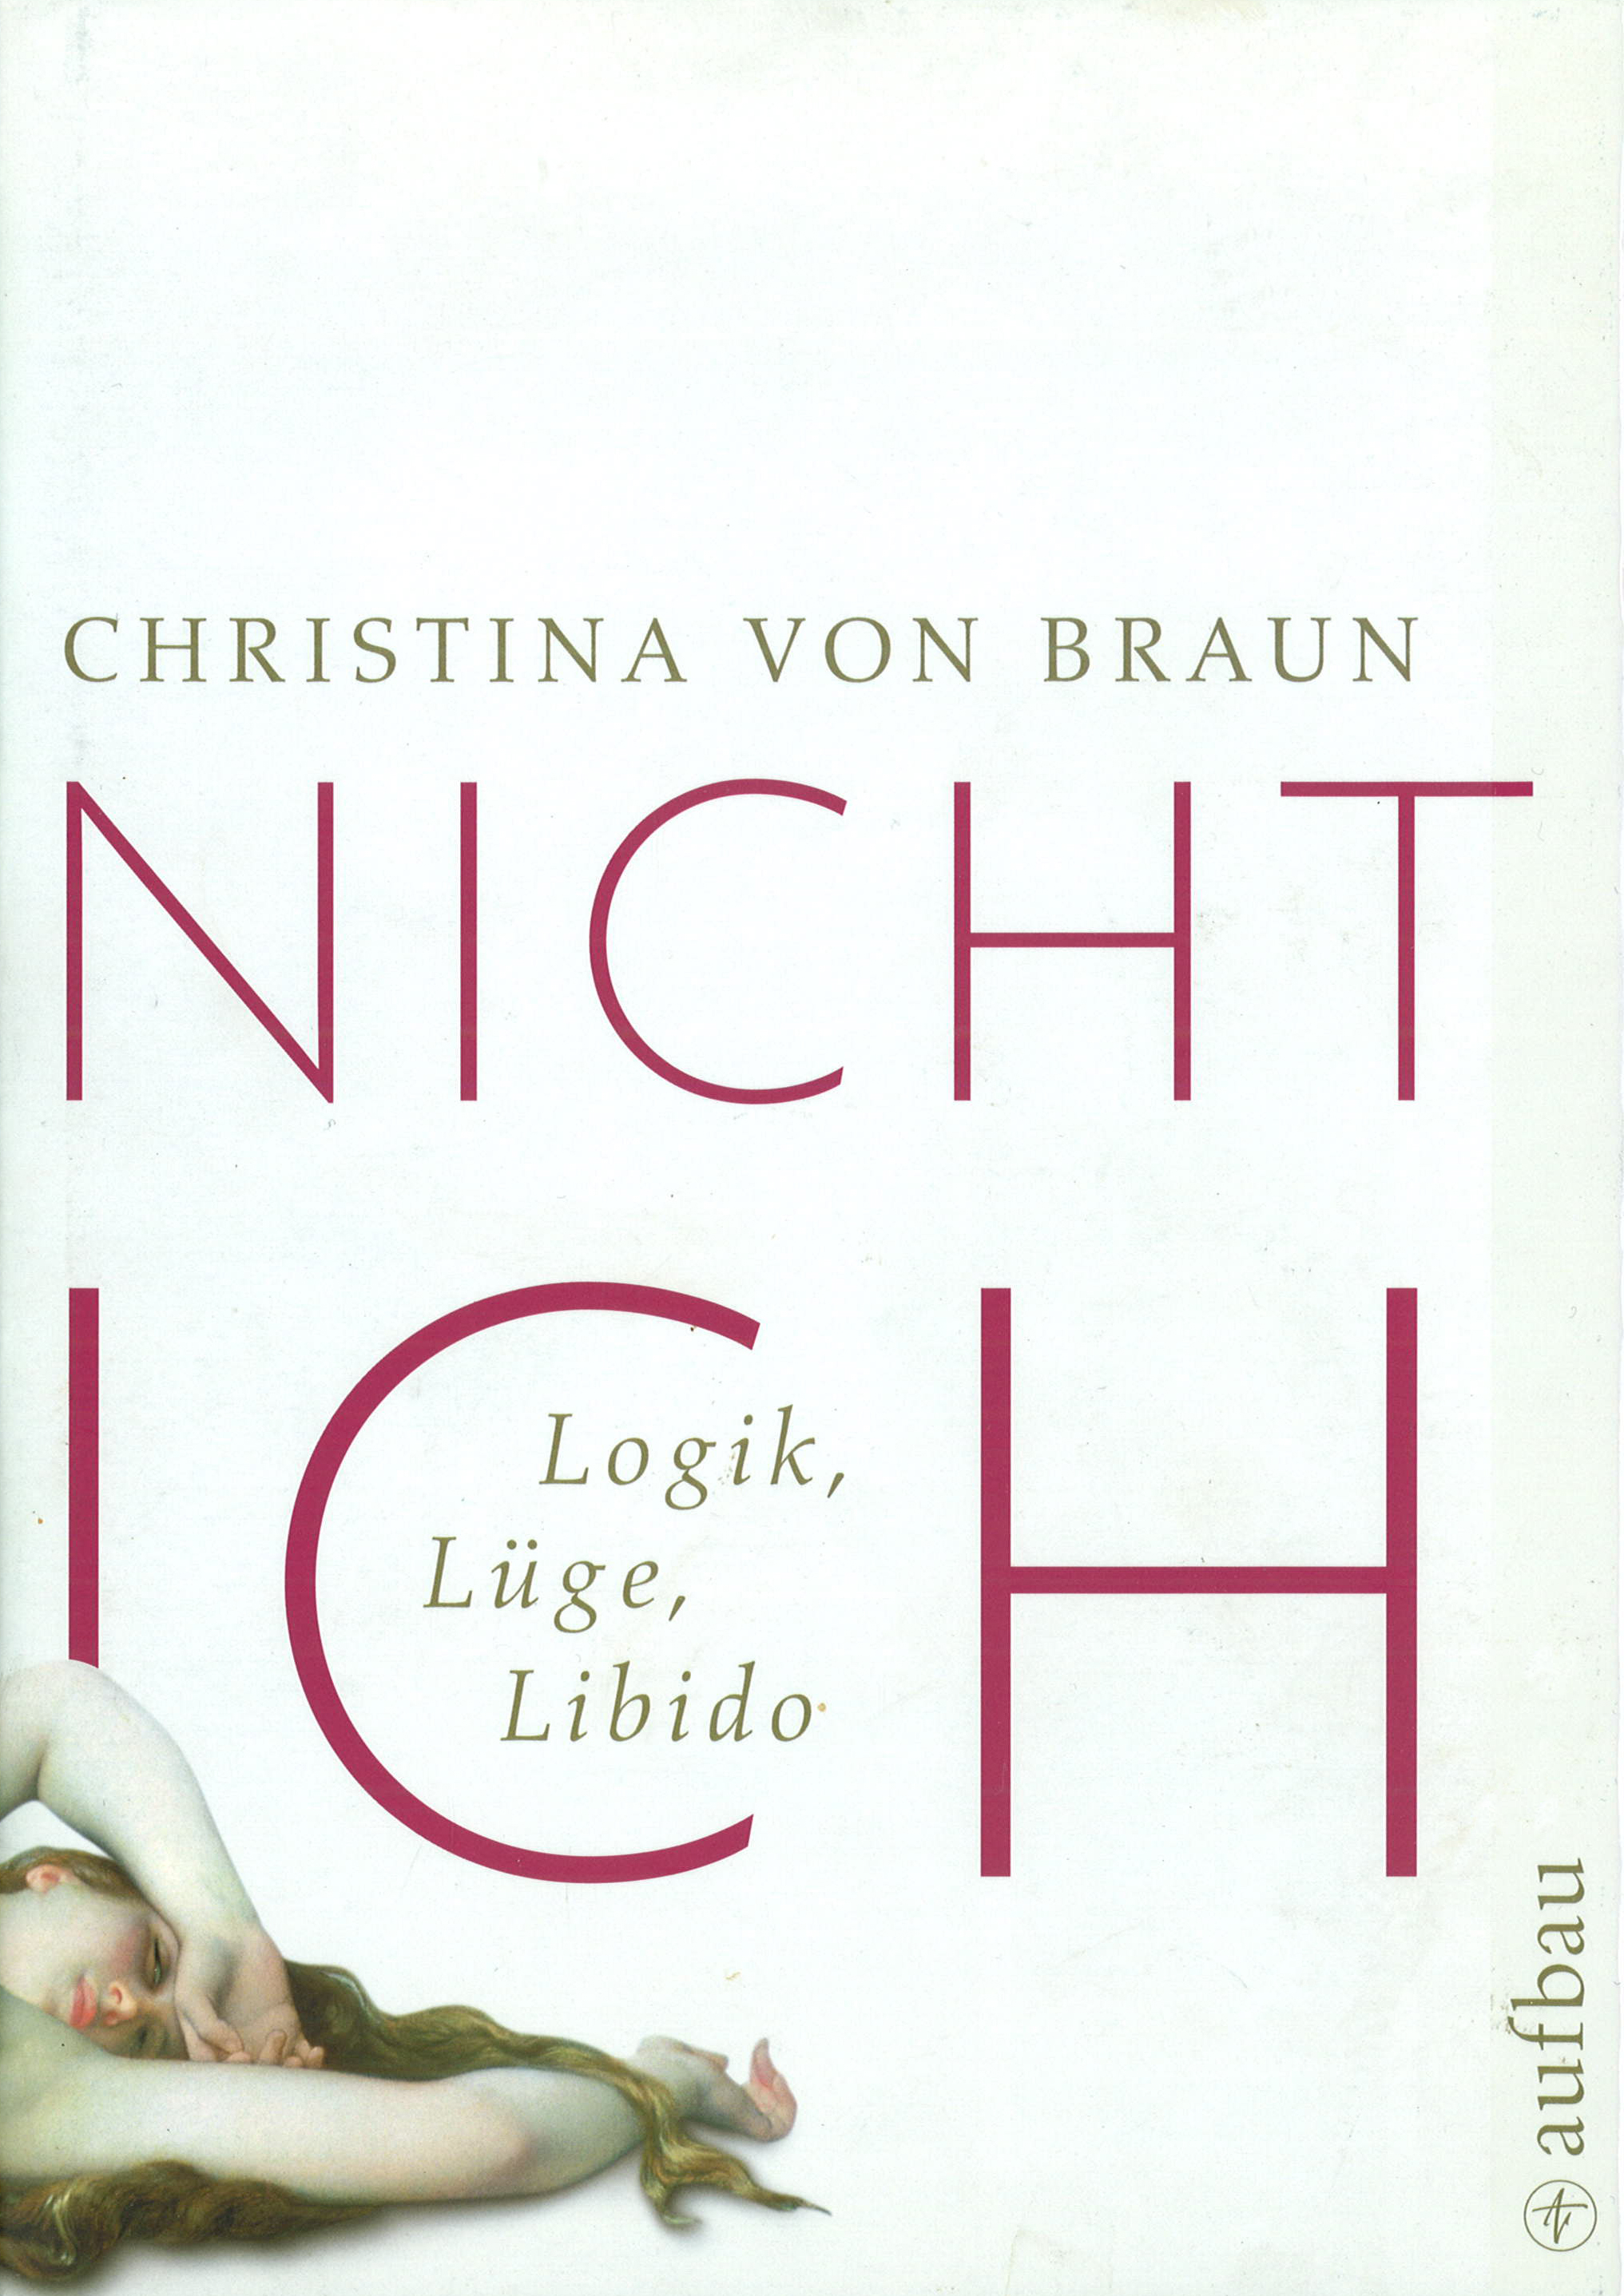 Buchcover: Christina von Braun - Nicht Ich